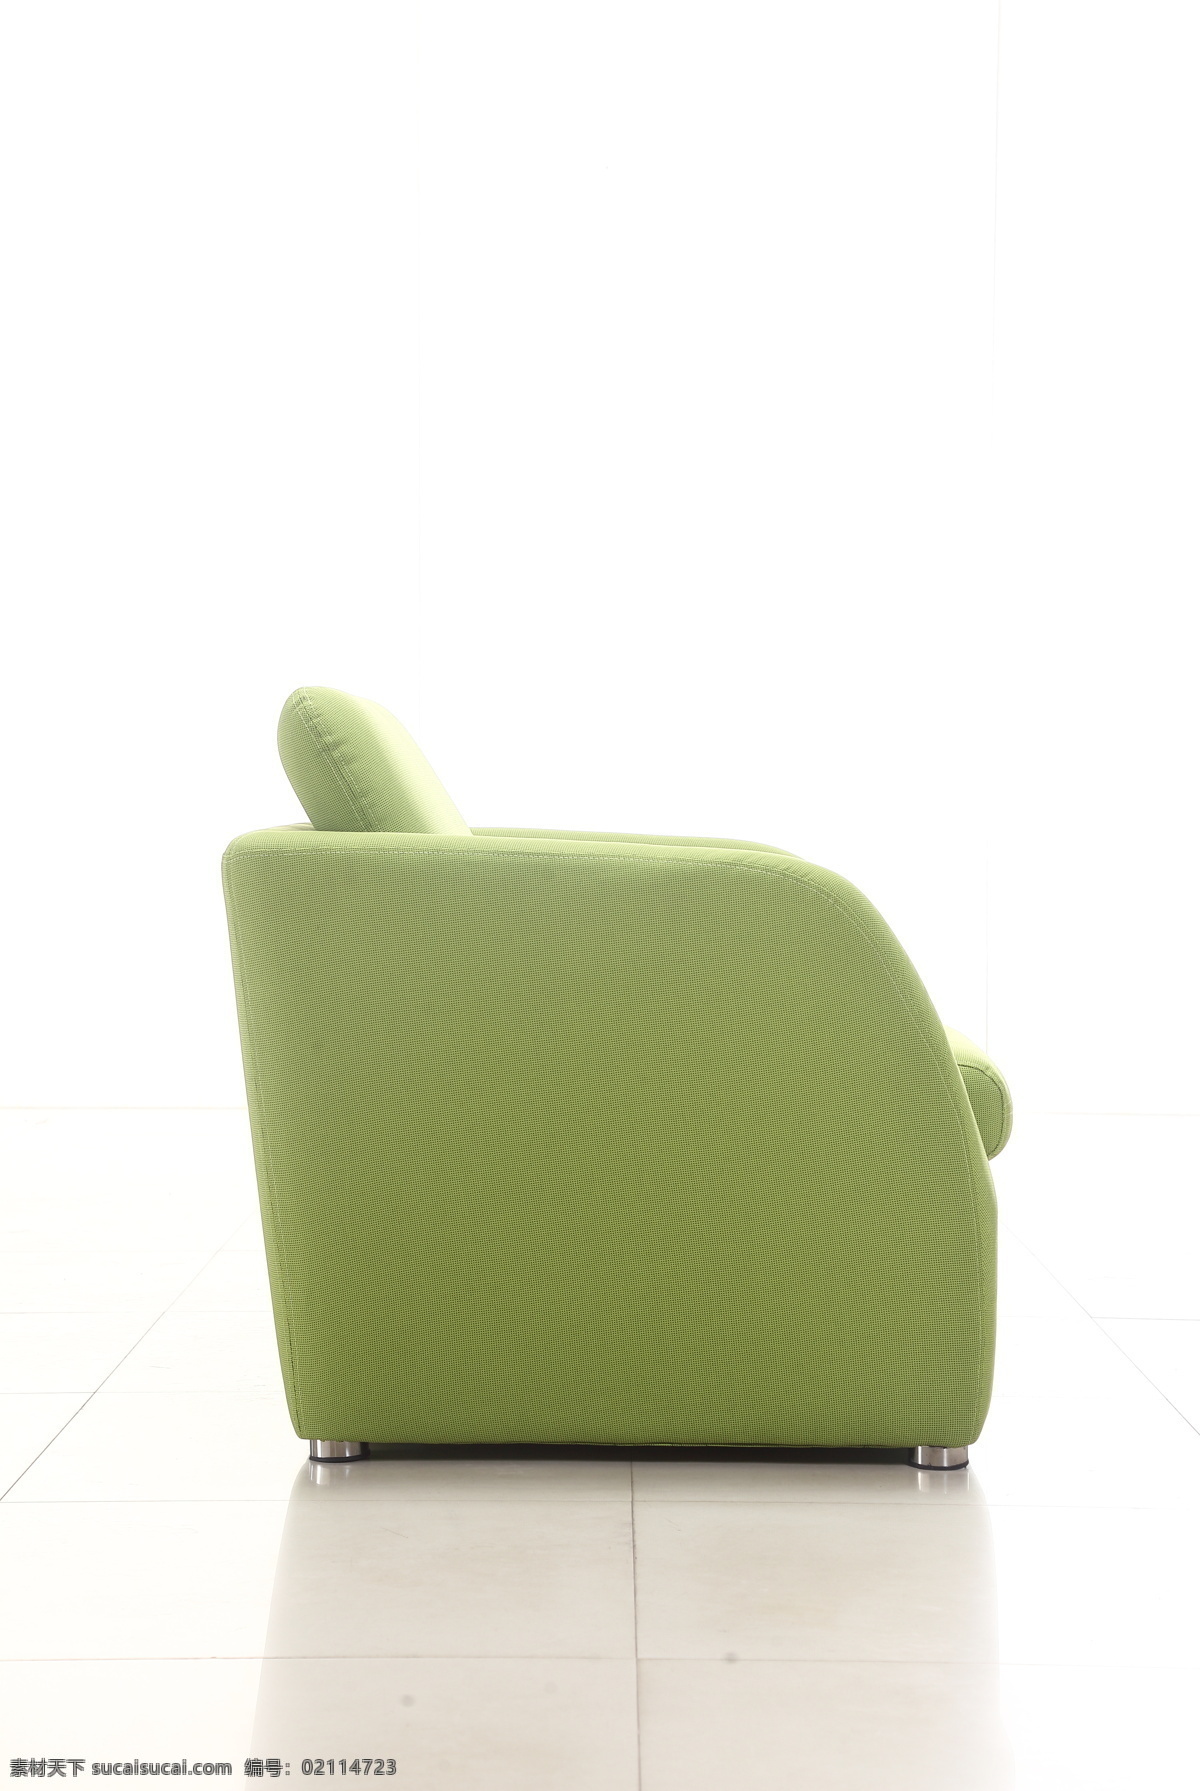 沙发侧面 浅绿色沙发 沙发特写图 单人沙发 布沙发 现代沙发 沙发 软沙发 可拆洗沙发 时尚沙发 舒适沙发 办公沙发